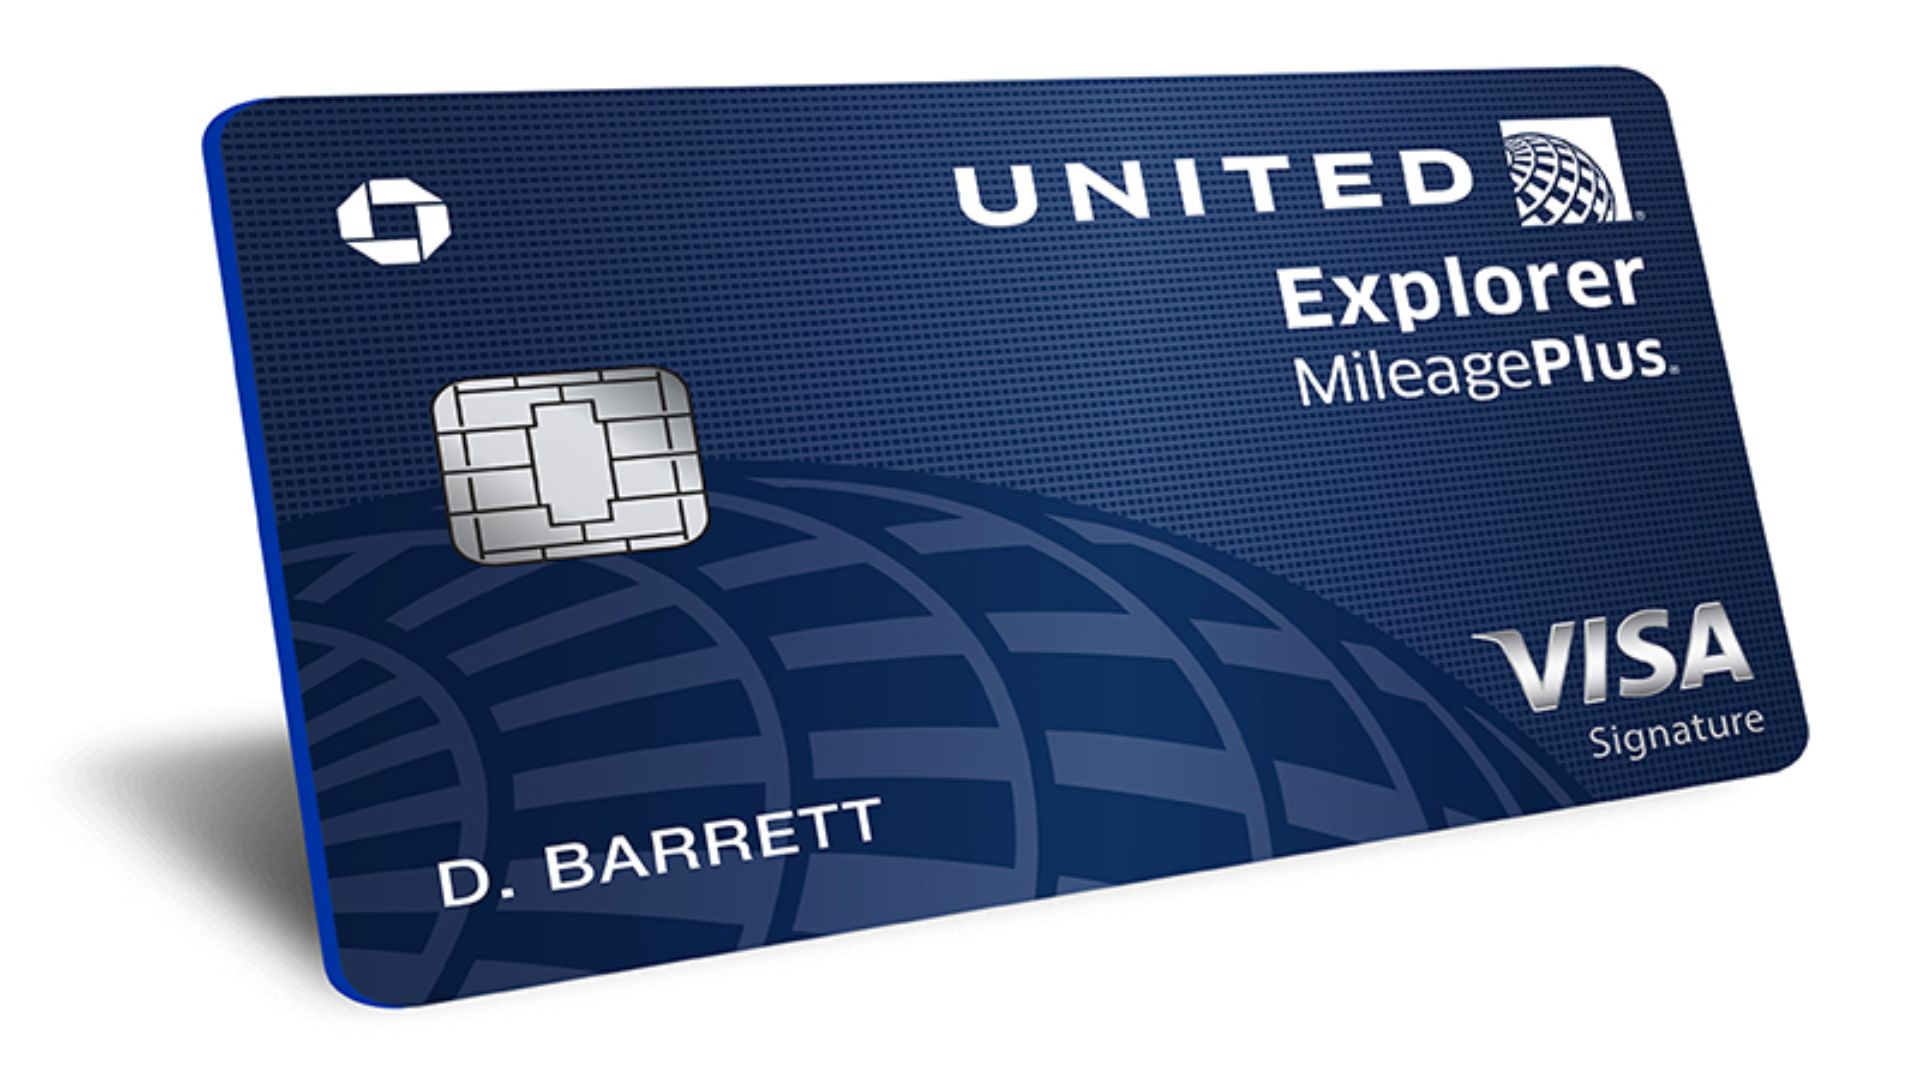 United MileagePlus Explorer Card